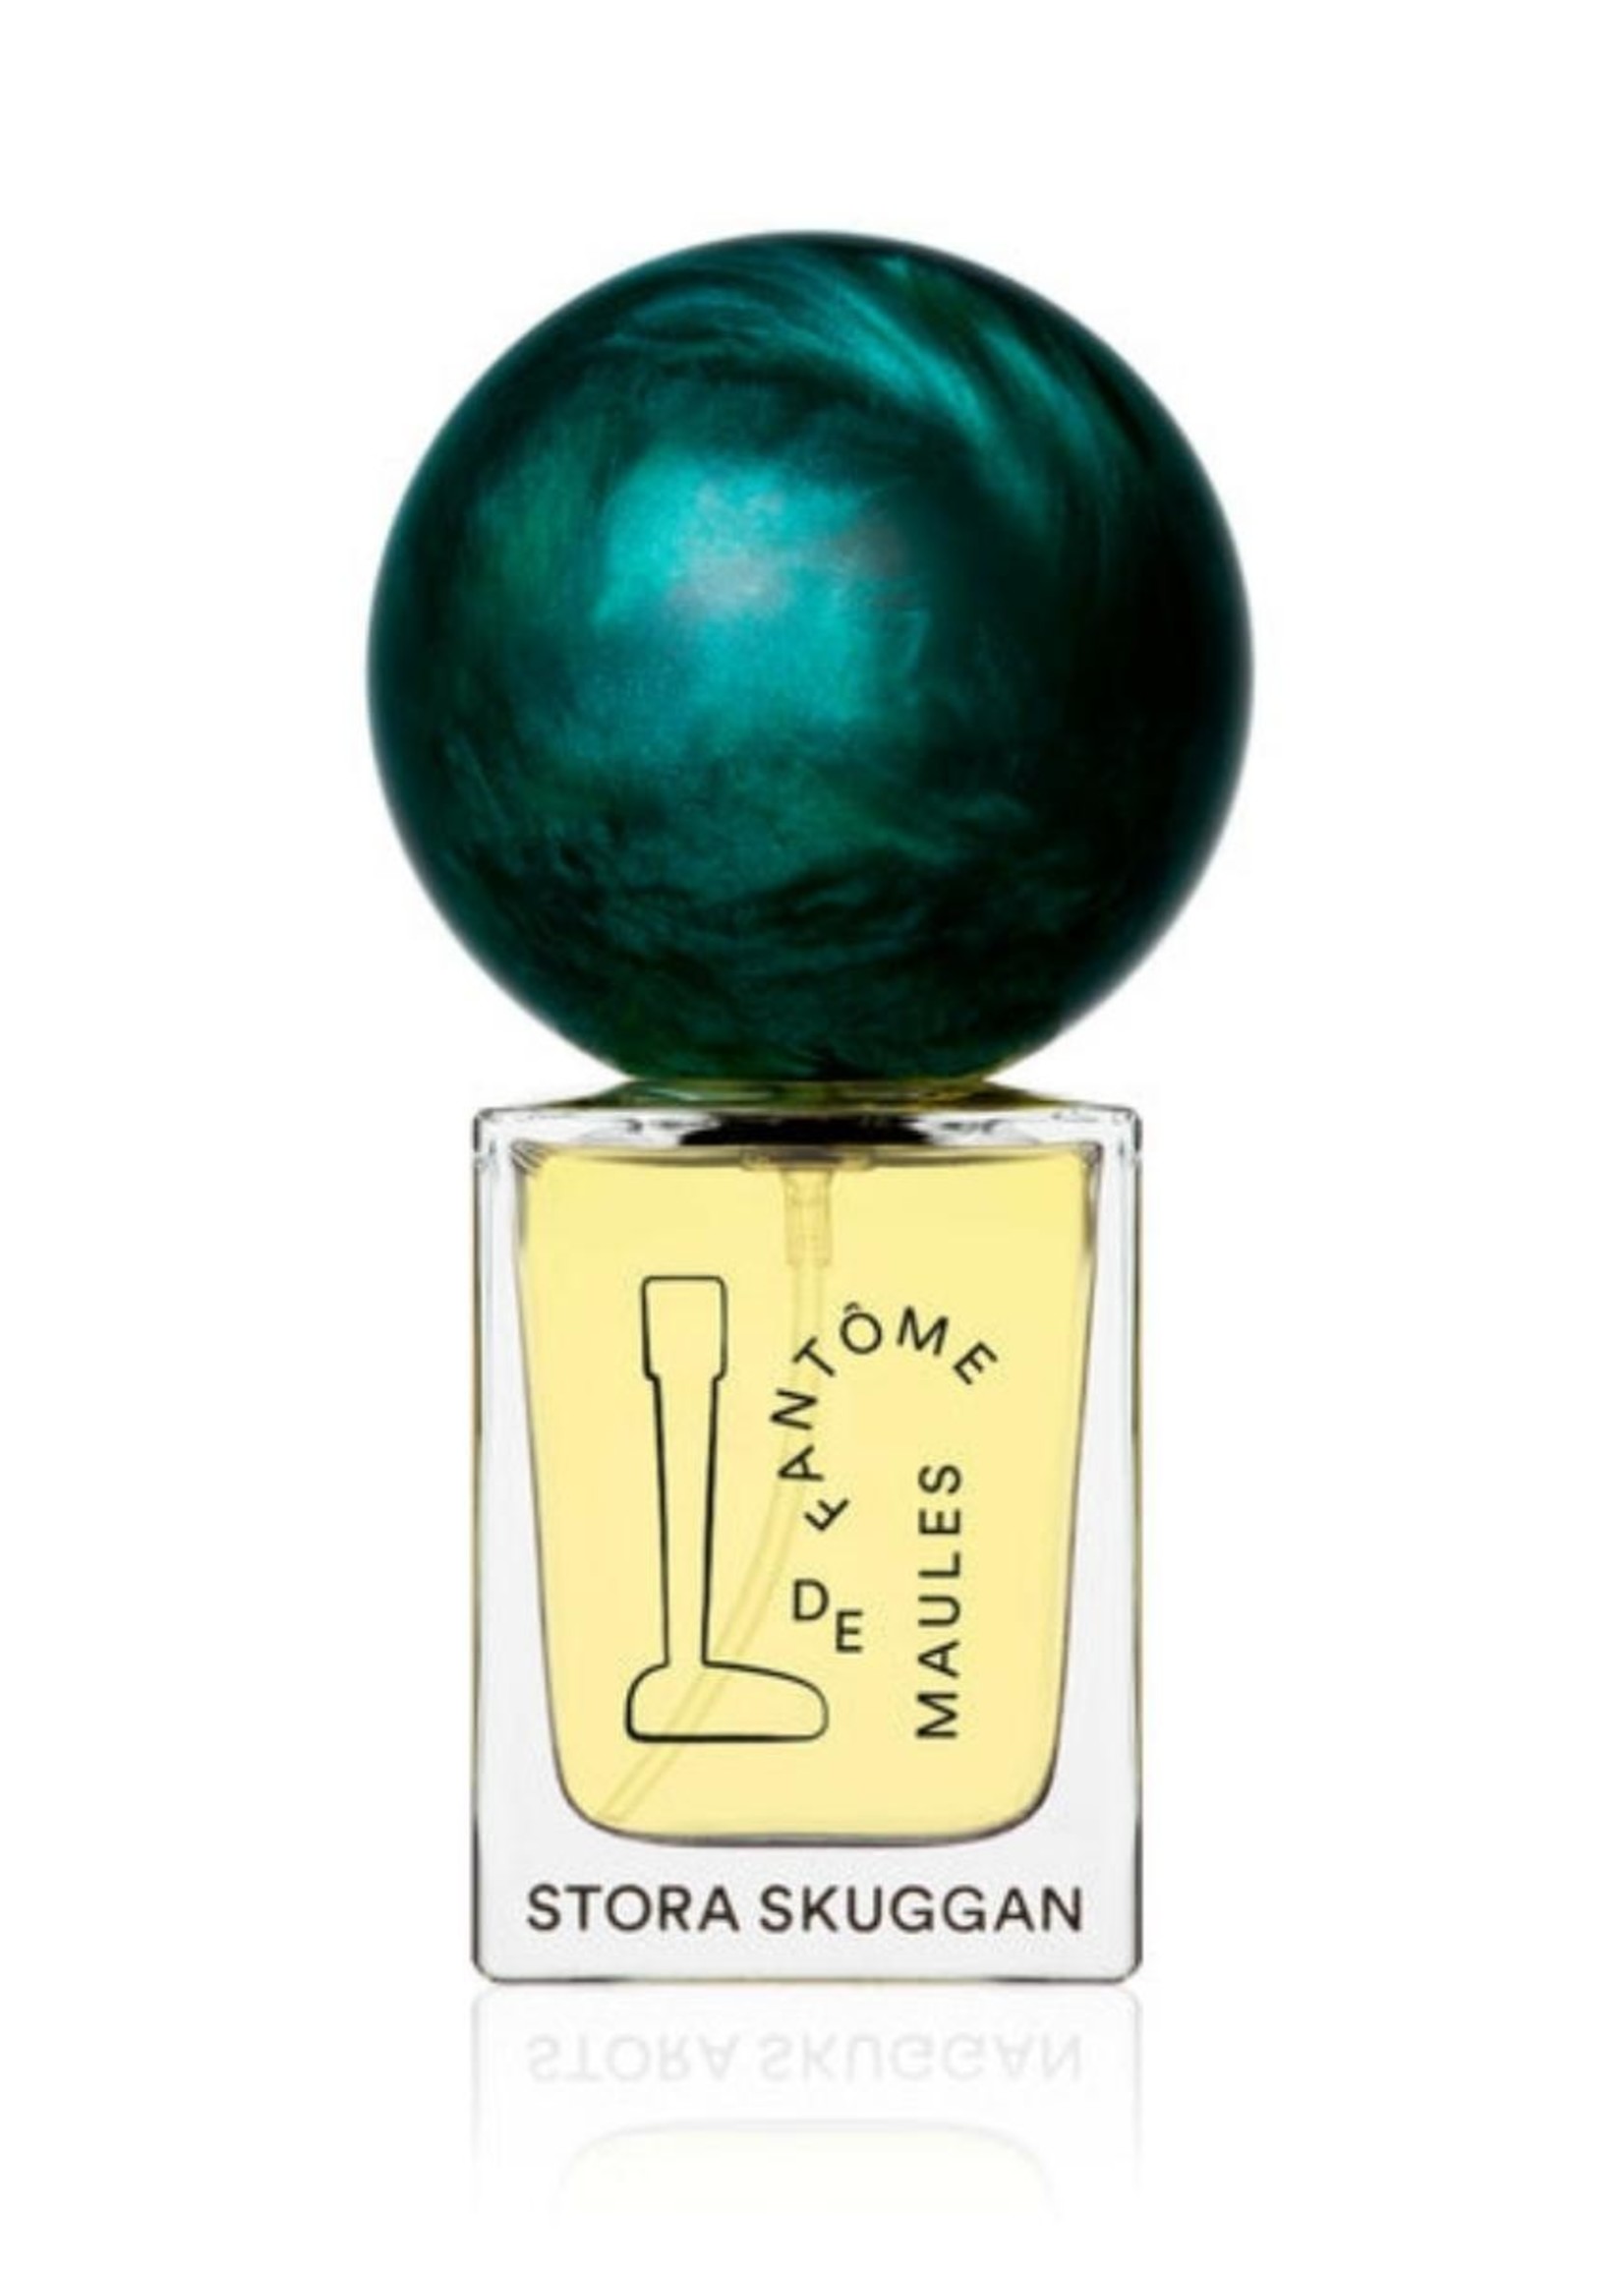 Stora Skuggan Stora Skuggan Fantôme de Maules Perfume